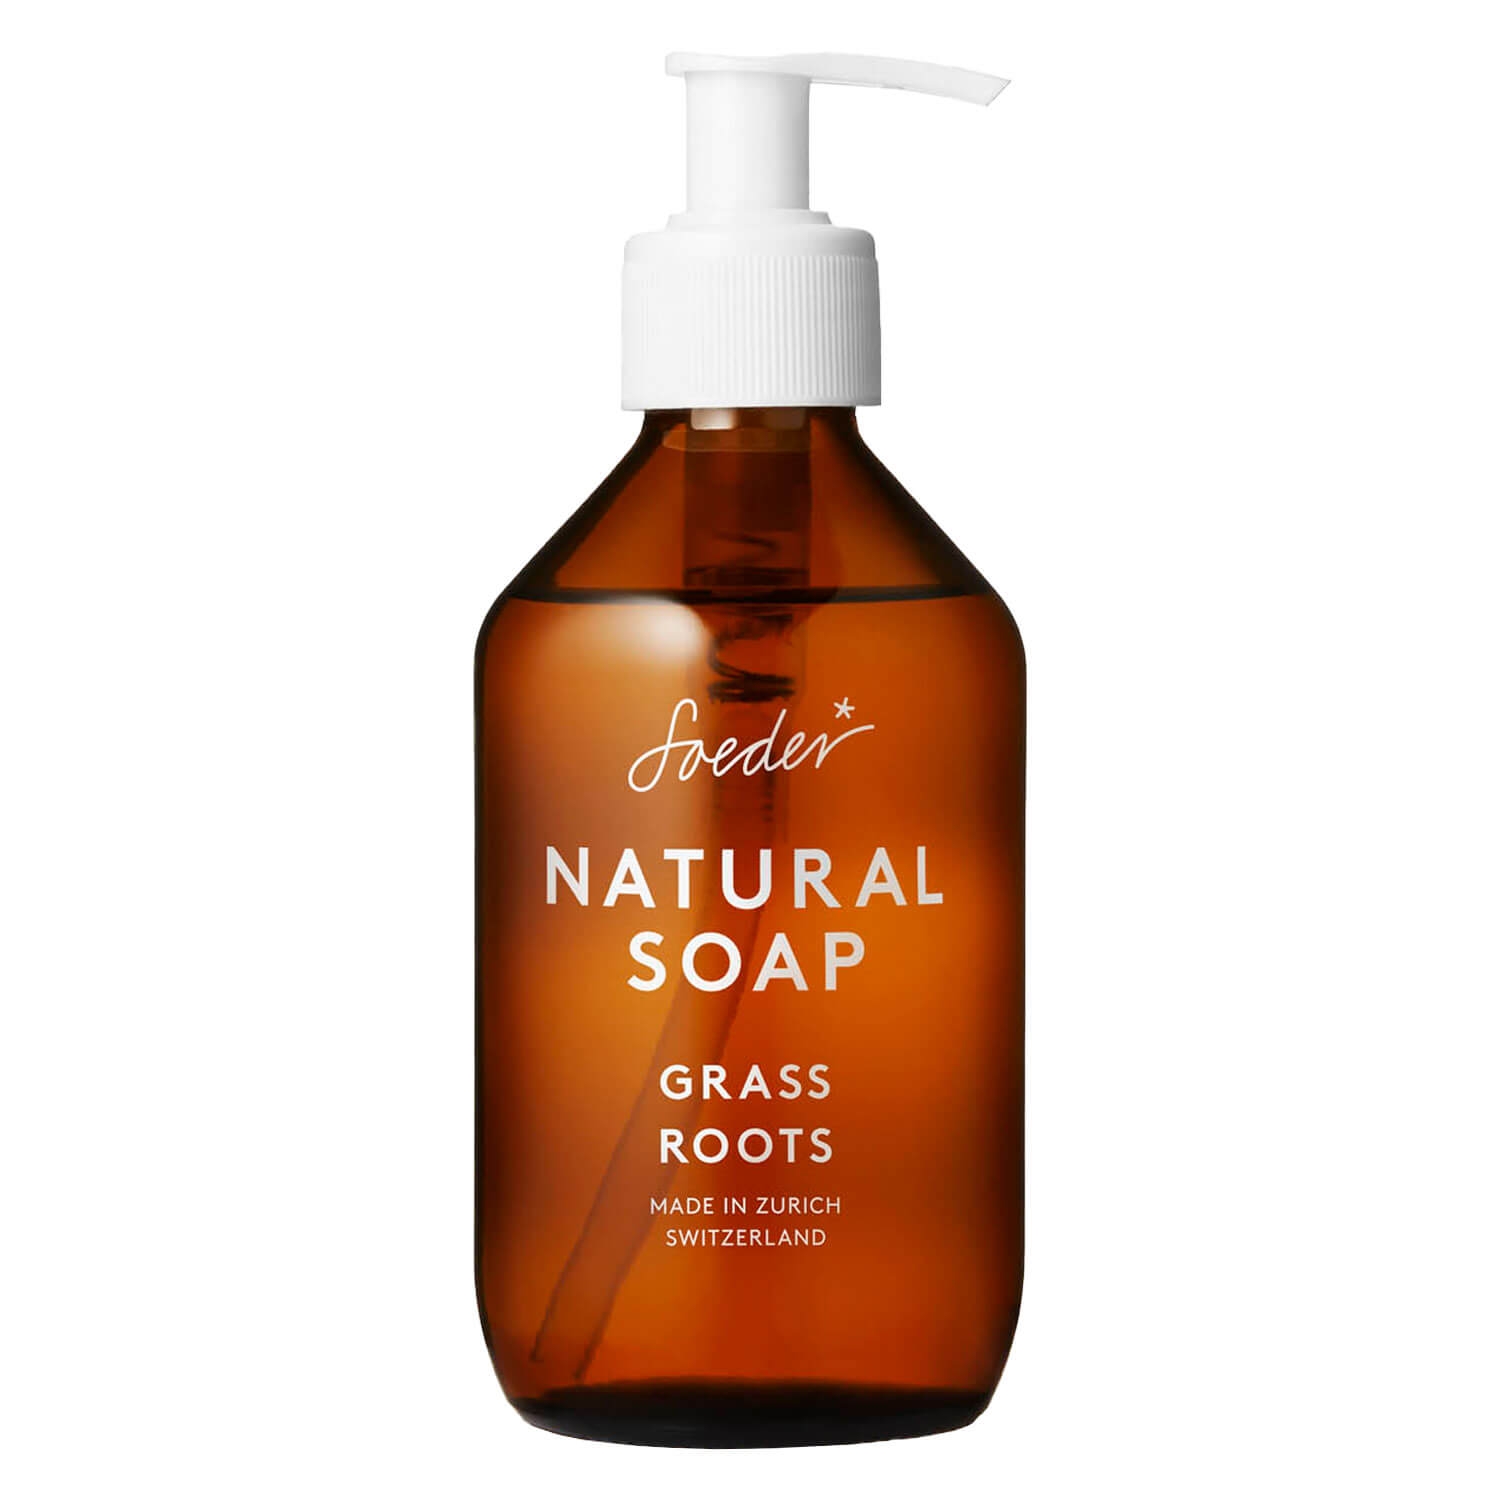 Produktbild von Soeder - Natural Soap Grass Roots